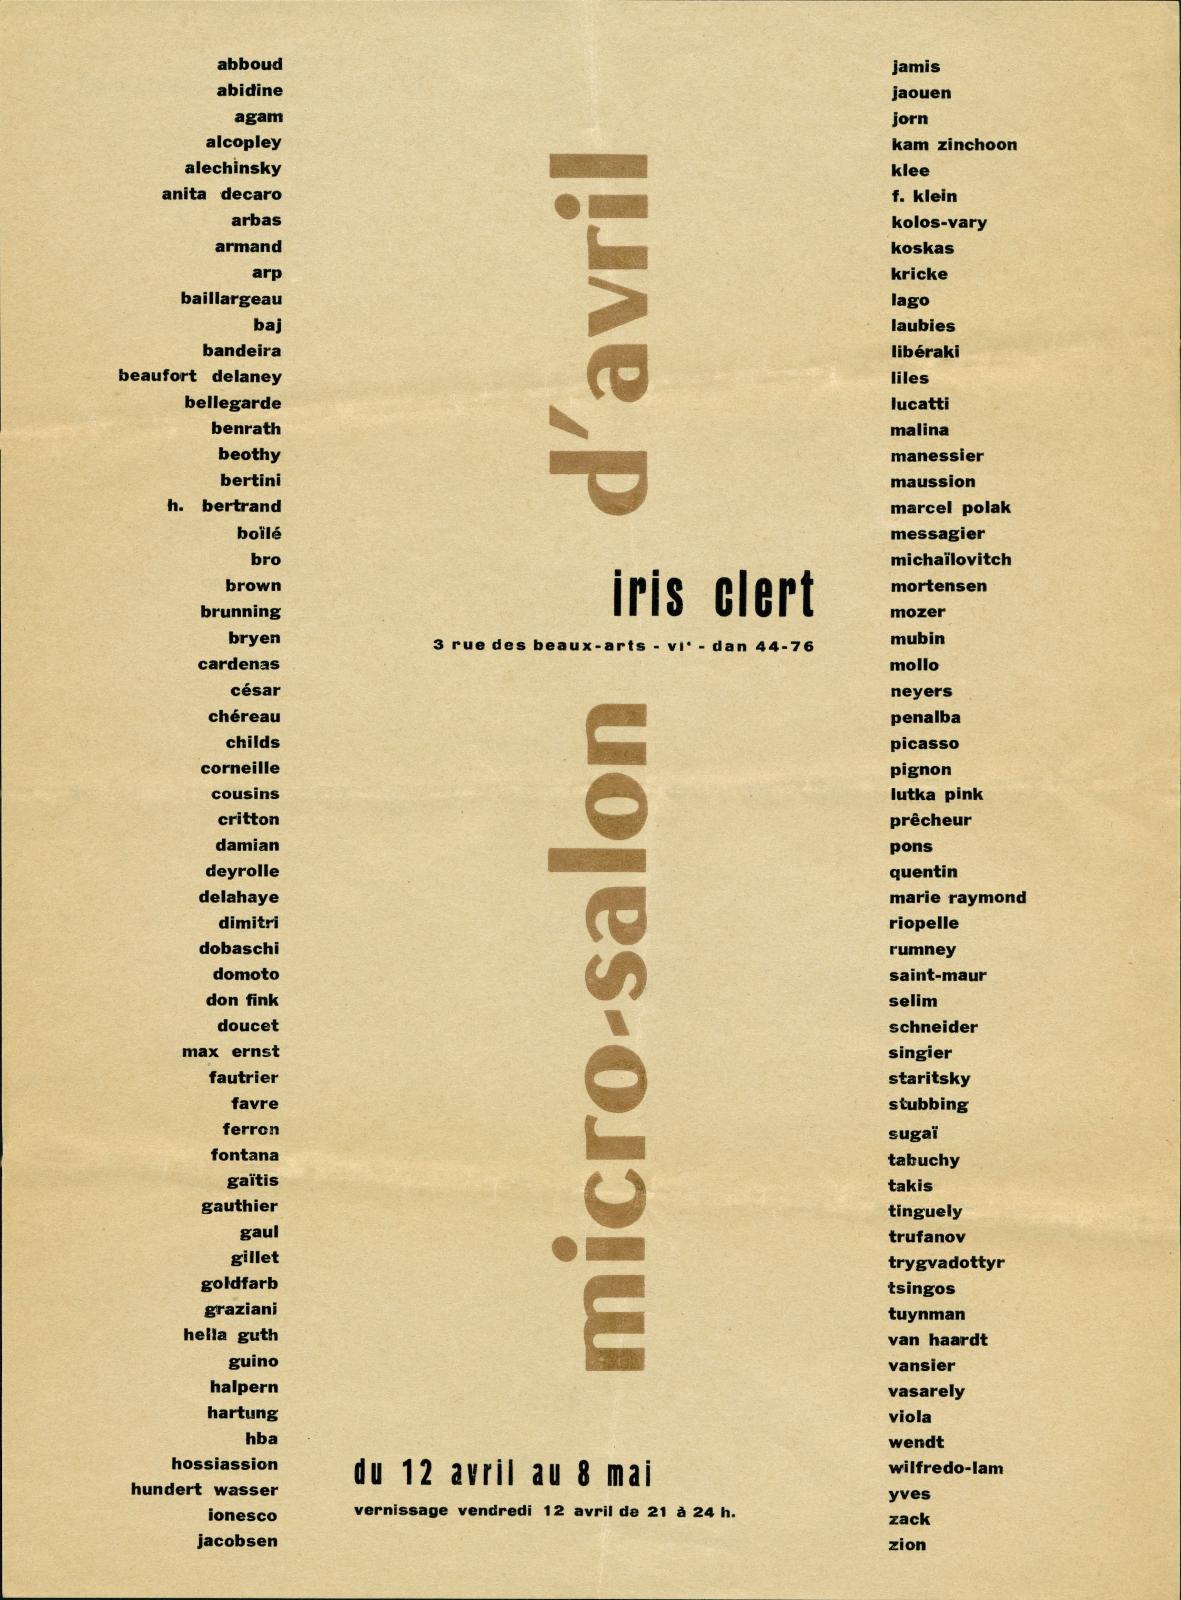 Carton d’invitation pour le micro-salon d’avril, galerie Iris Clert, Paris, avril 1957. © Bibliothèque Kandinsky, Paris, Fonds Iris Clert